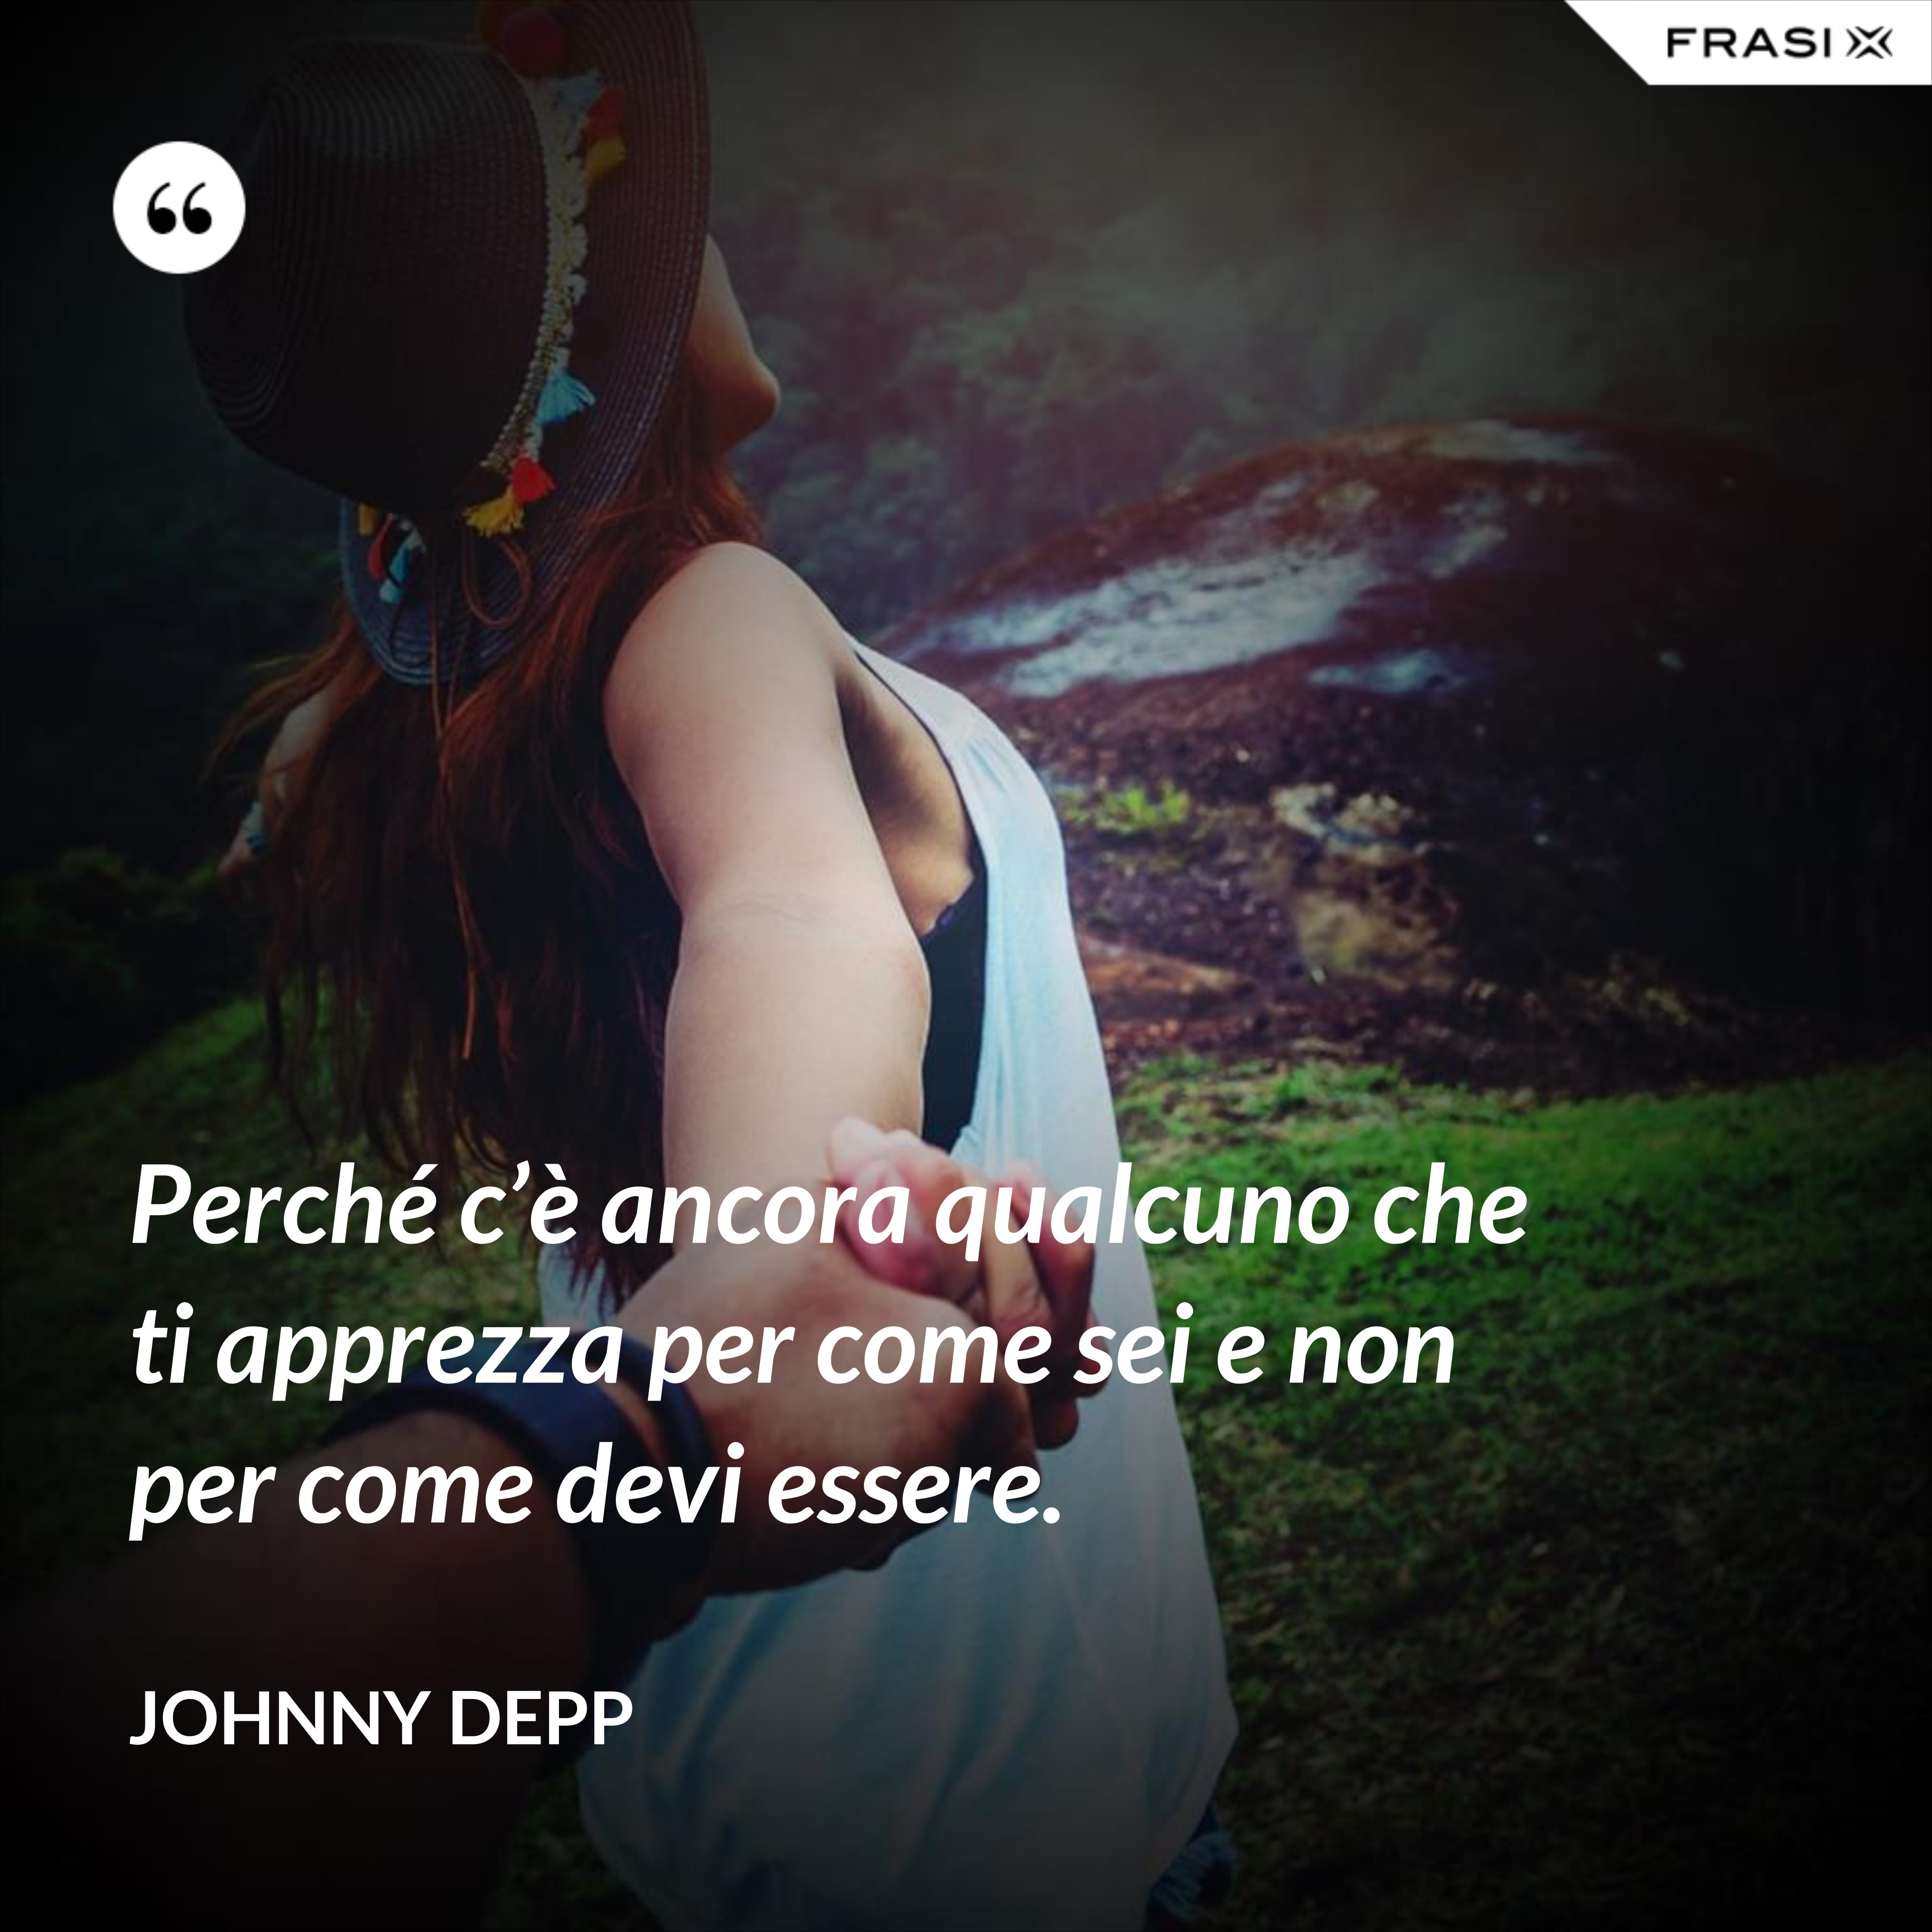 Perché c’è ancora qualcuno che ti apprezza per come sei e non per come devi essere. - Johnny Depp